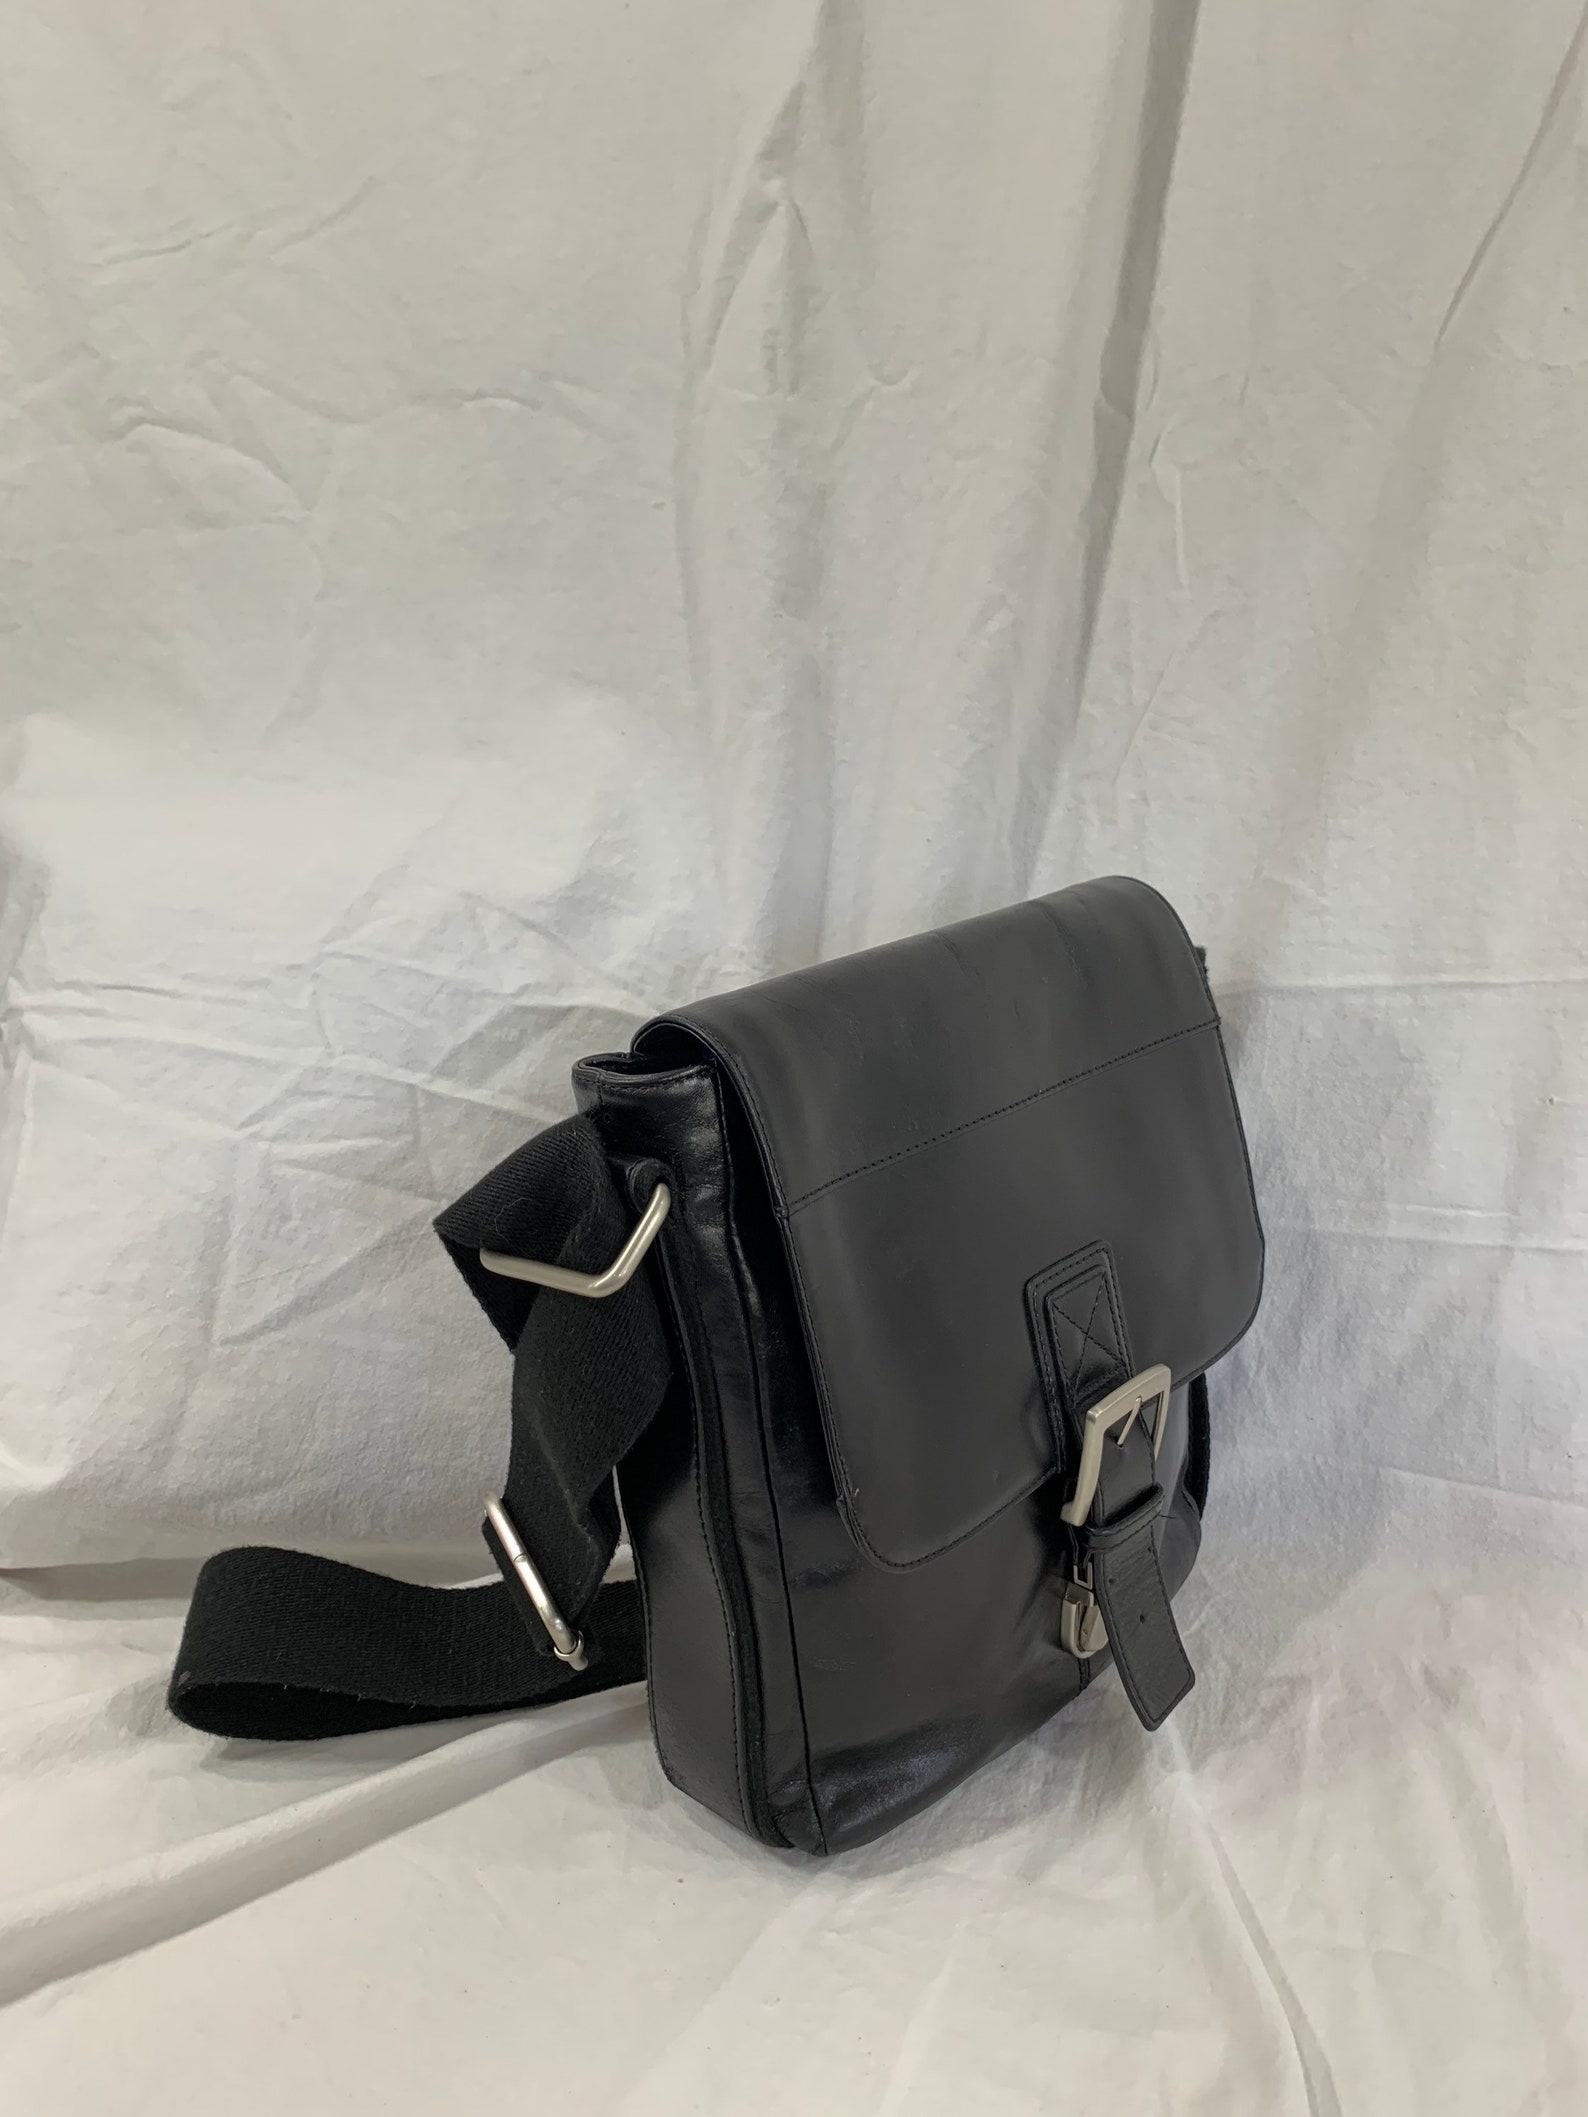 Genuine Vintage FOSSIL Black Leather Cross Body Shoulder Bag | Etsy